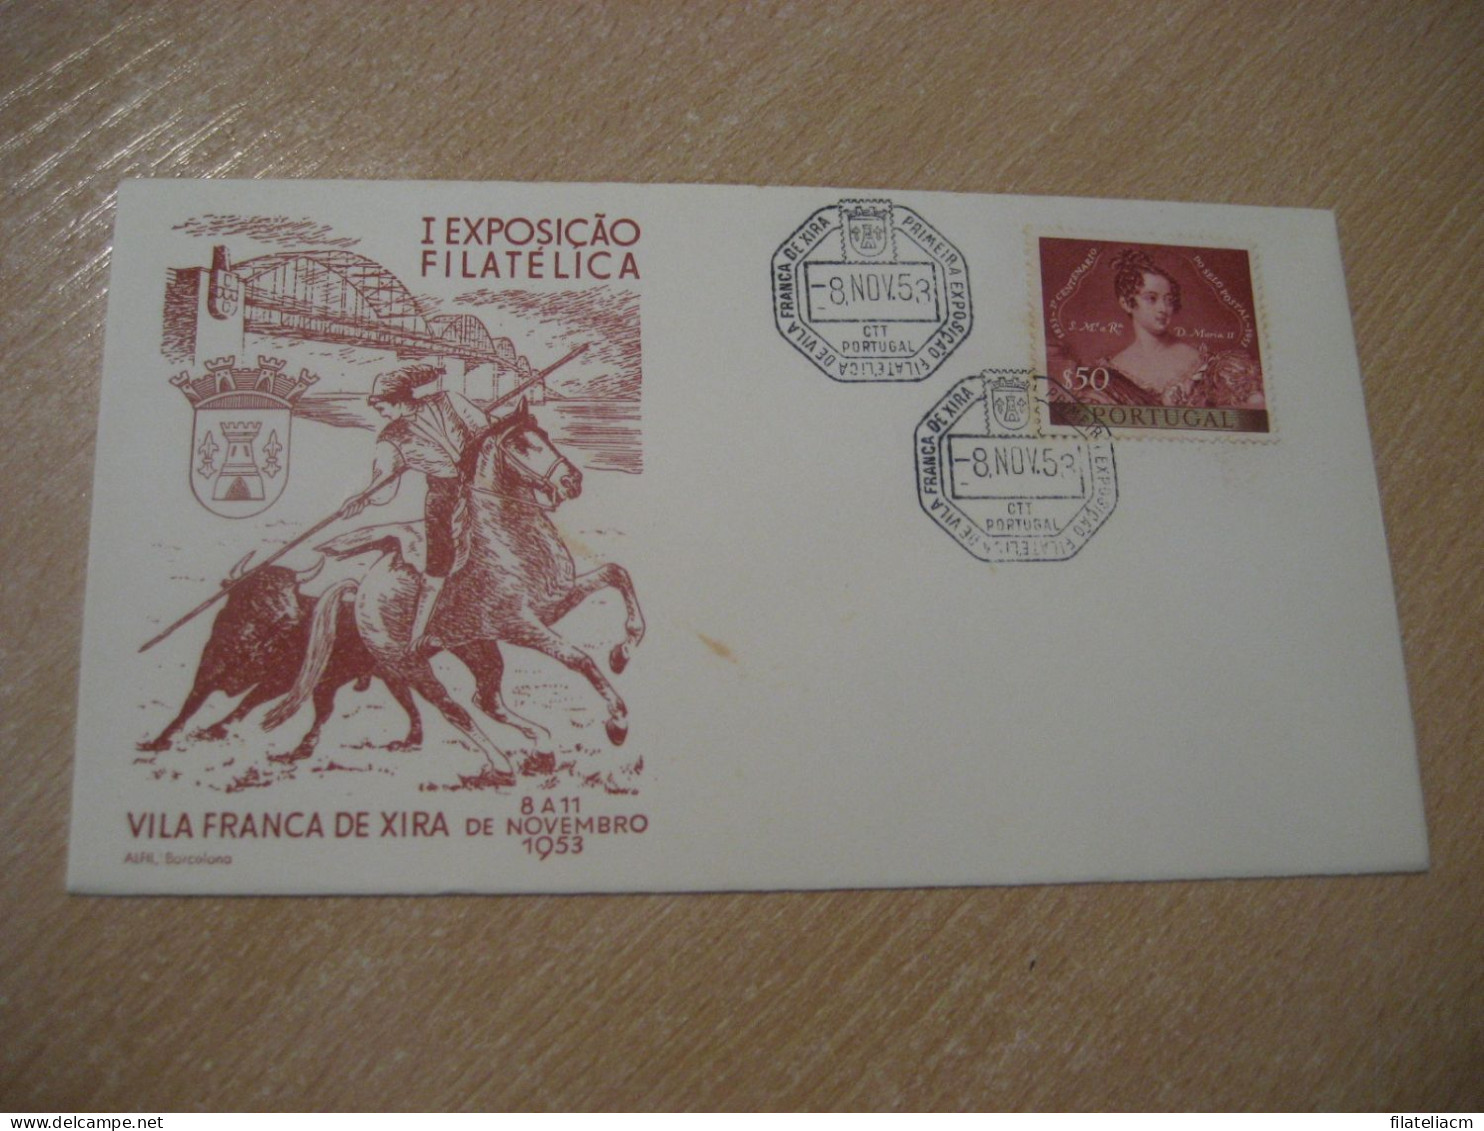 VILA FRANCA DE XIRA 1953 Expo Filatelica Toro Rejoneador Cow Bull Horse Matador Cancel Cover PORTUGAL - Covers & Documents